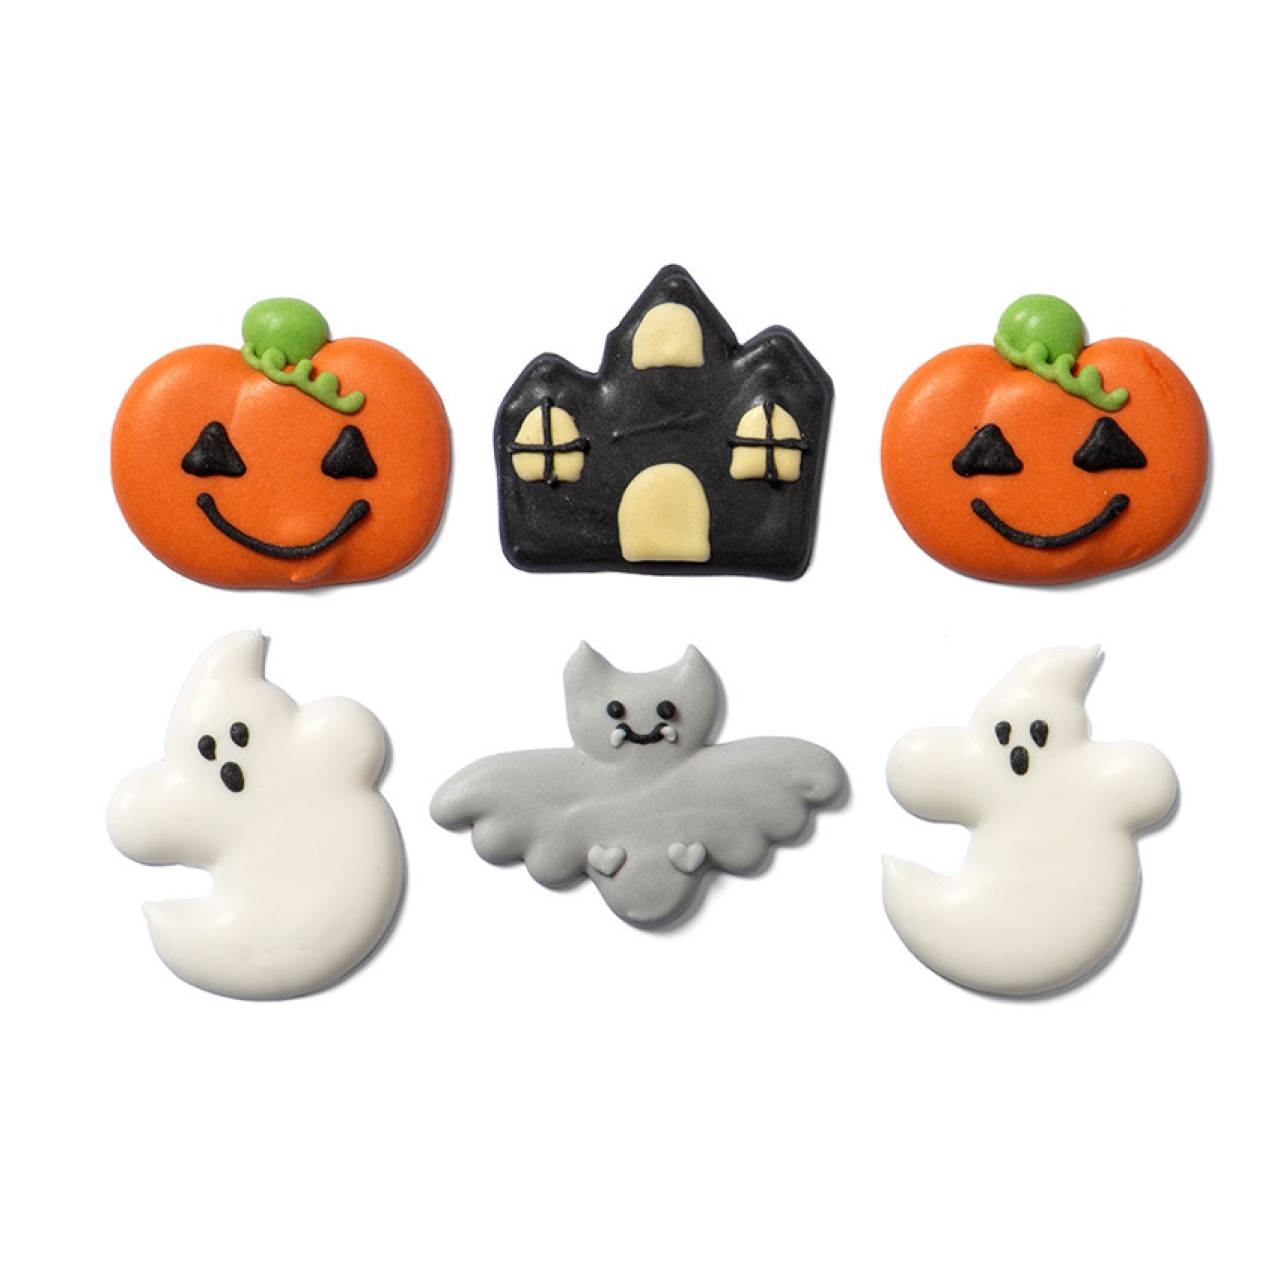 Zuckerdekor "Halloween", 6 Stück (4 Designs), Orange, Schwarz, Weiß & Grau, handgespritzt, 3-4,5 cm, Decora